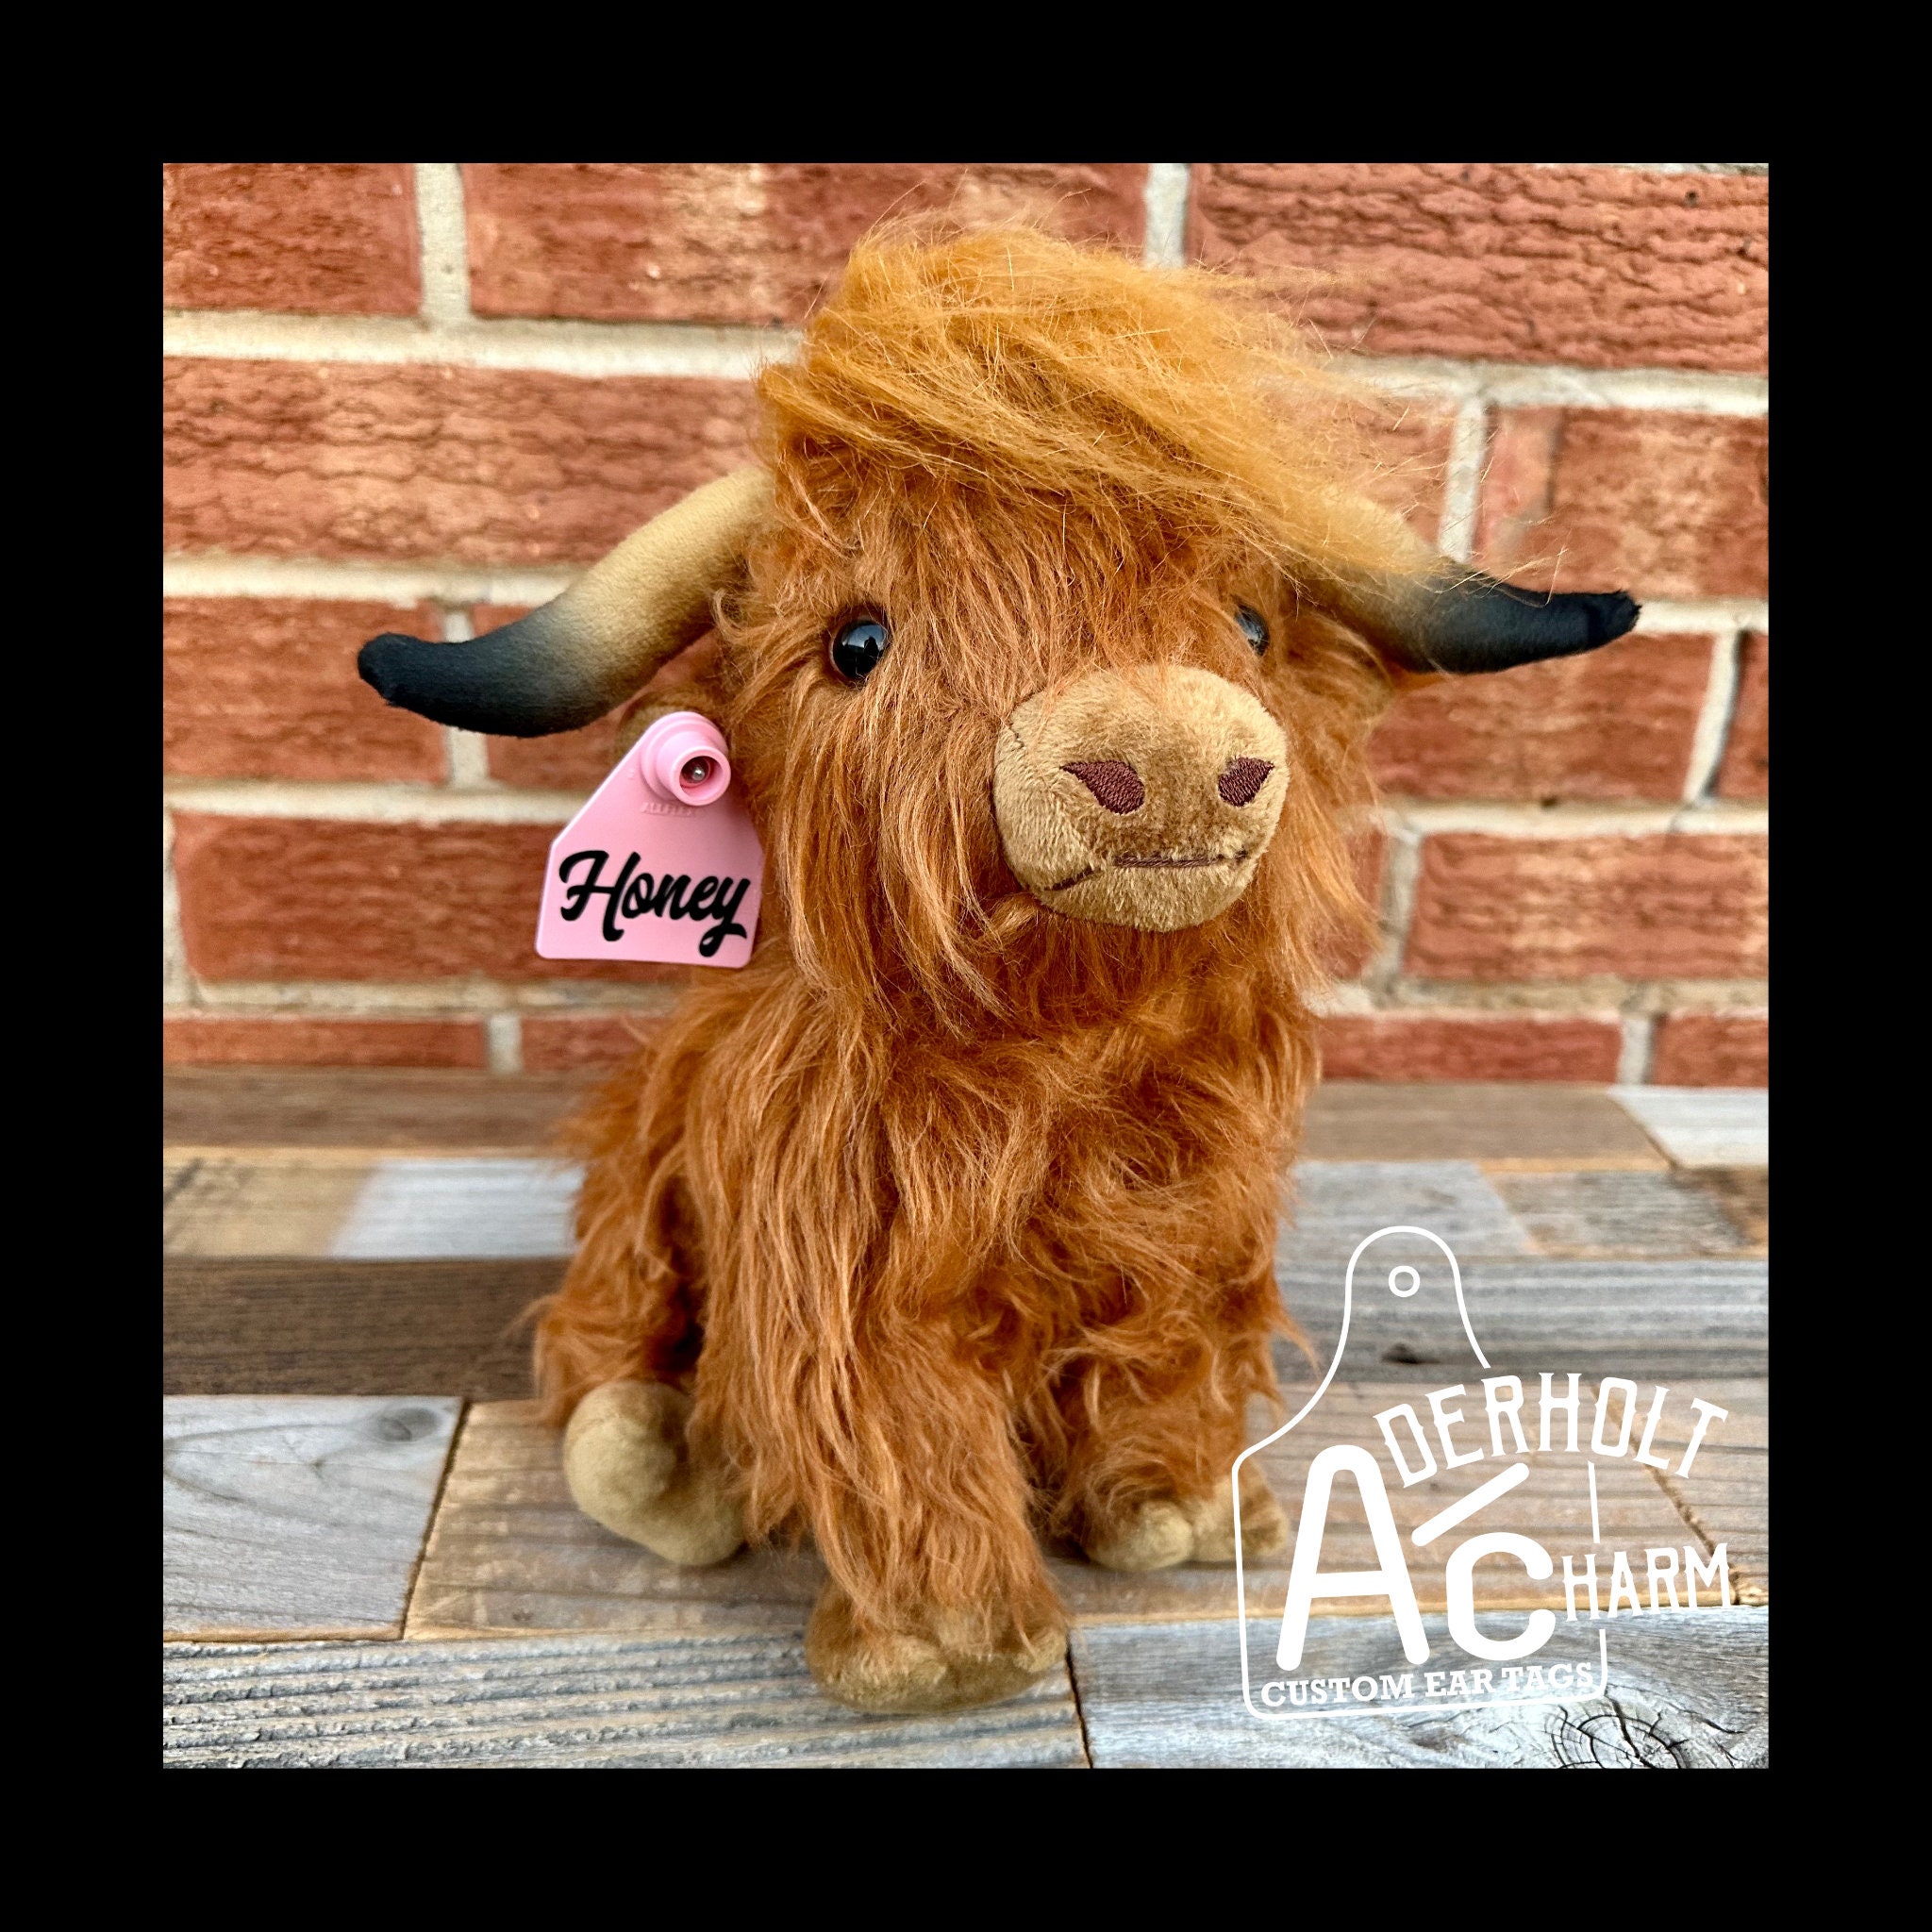 26cm Large Highland Cow Cuddly Soft Toy - Plush Scottish Scotland Cow Gift  Idea